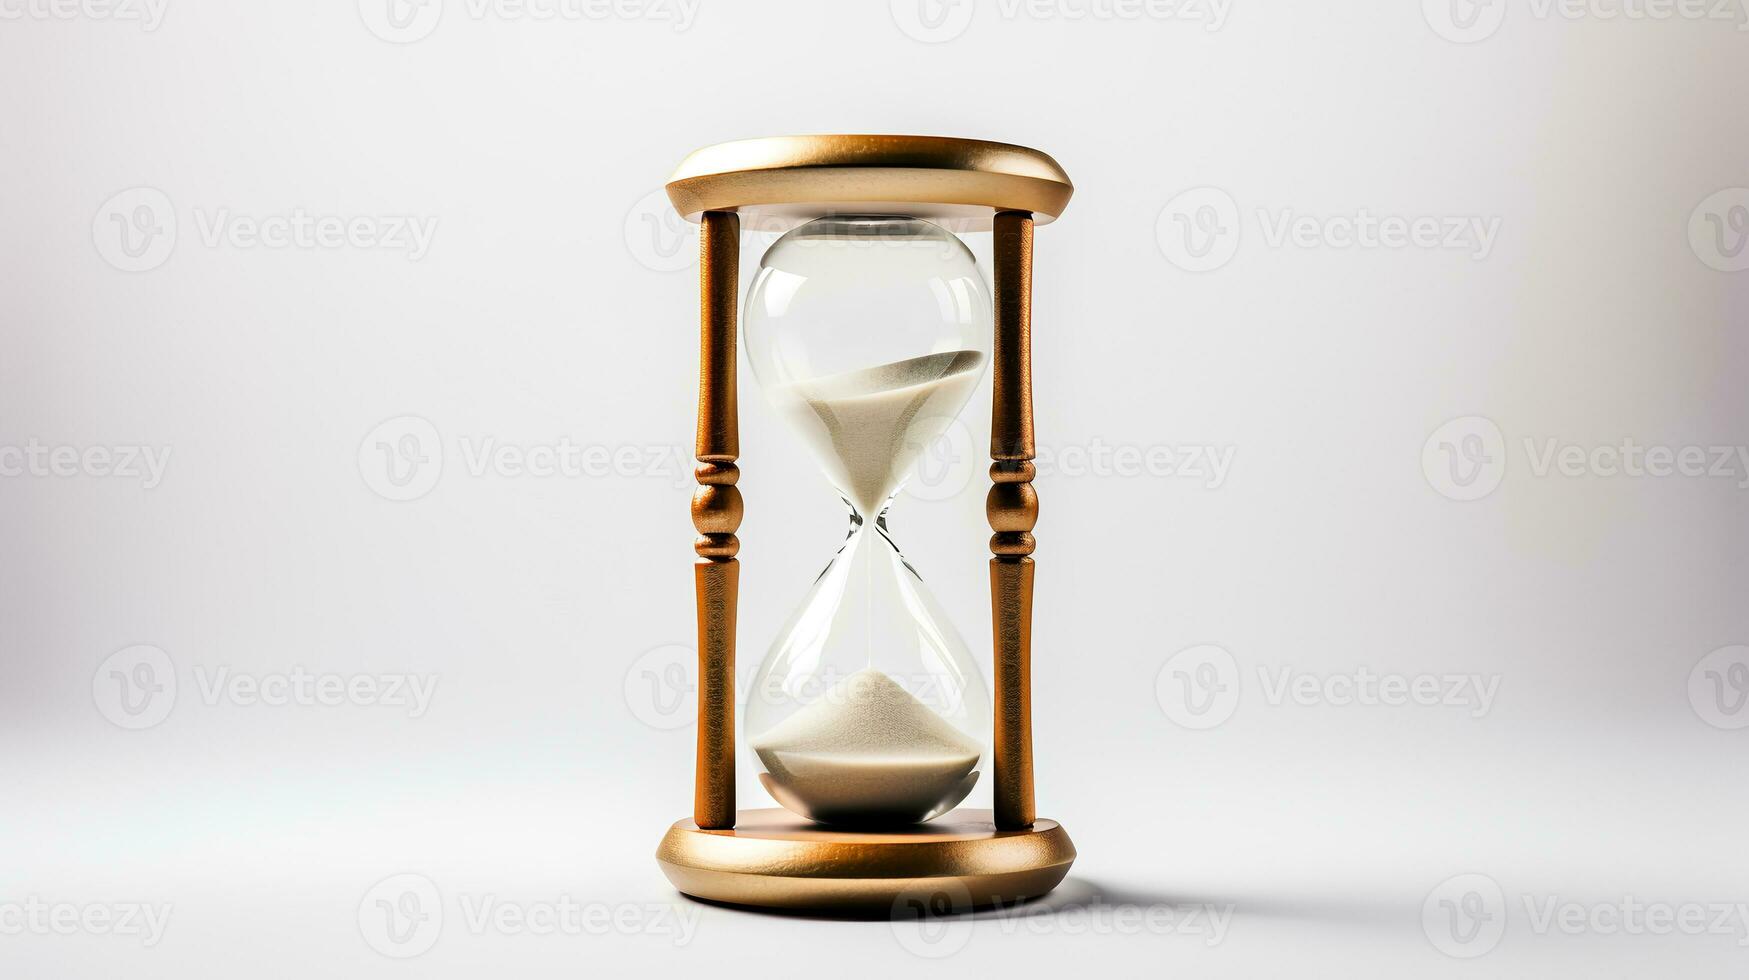 Photo of Minimalis hourglass isolated on white background